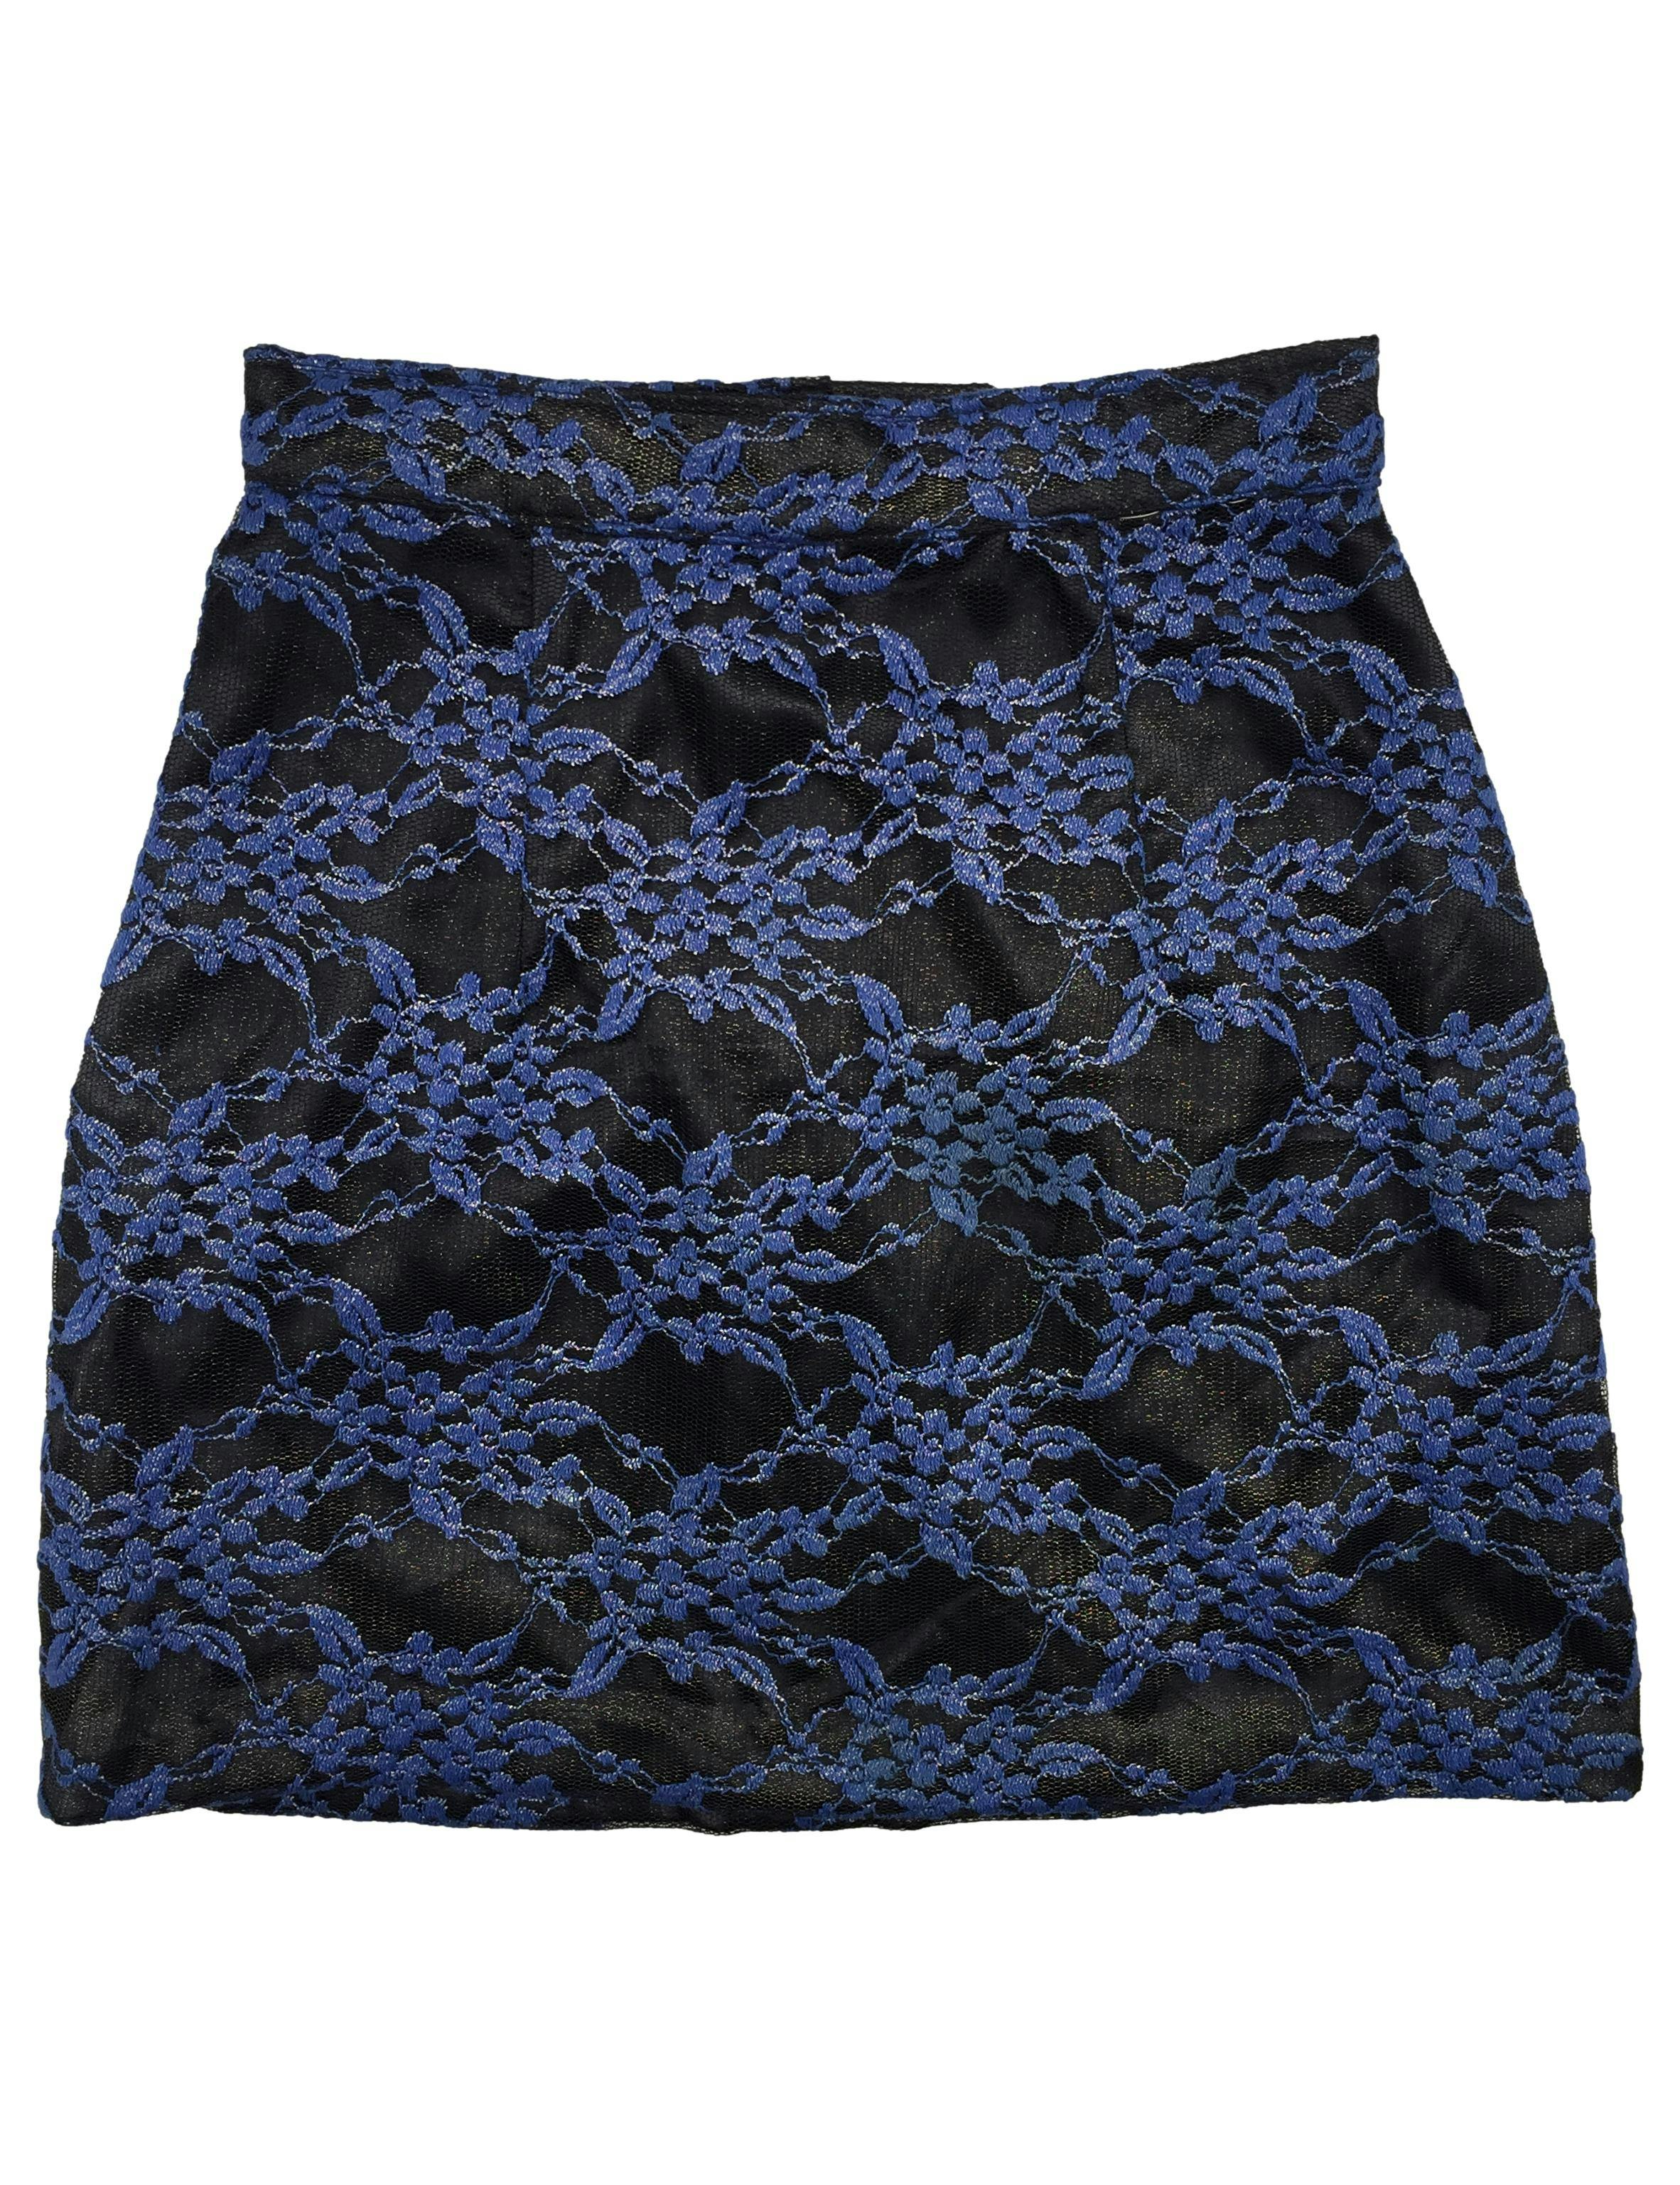 Falda mini en A , tela mesh con bordado floral e hilos metalizados, tiene forro y cierre posterior. Cintura 68cm, Largo 45cm.